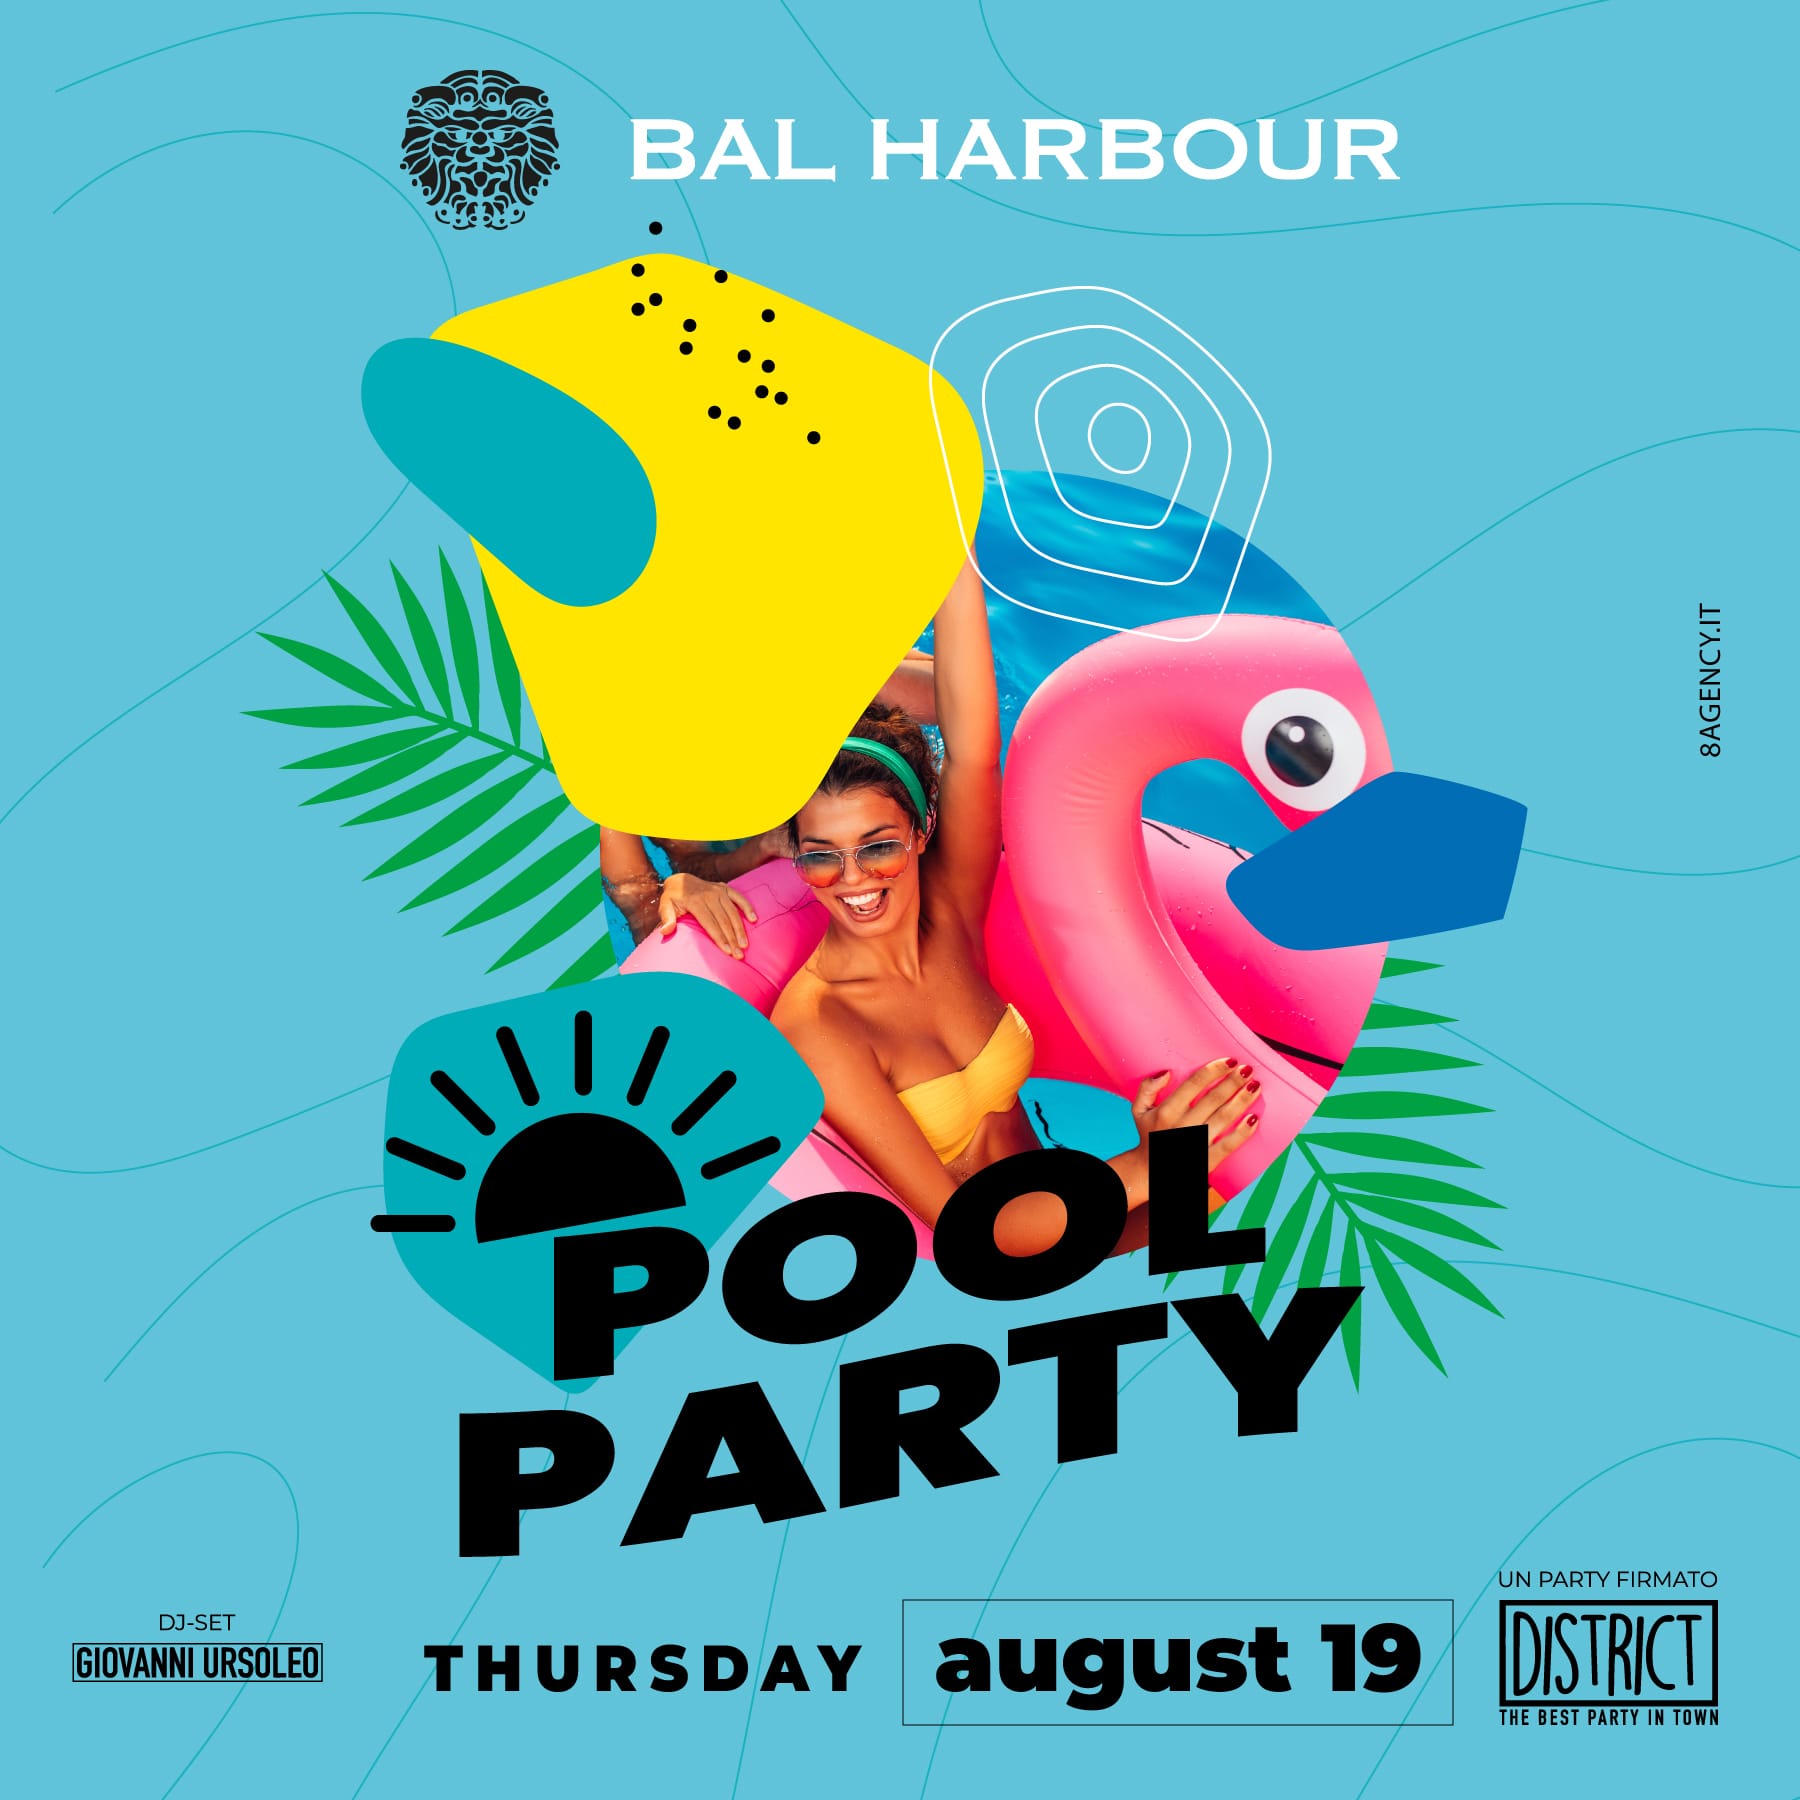 Pool Party in Piscina San Teodoro Giovedì 19 Agosto 2021 - Bal Harbour